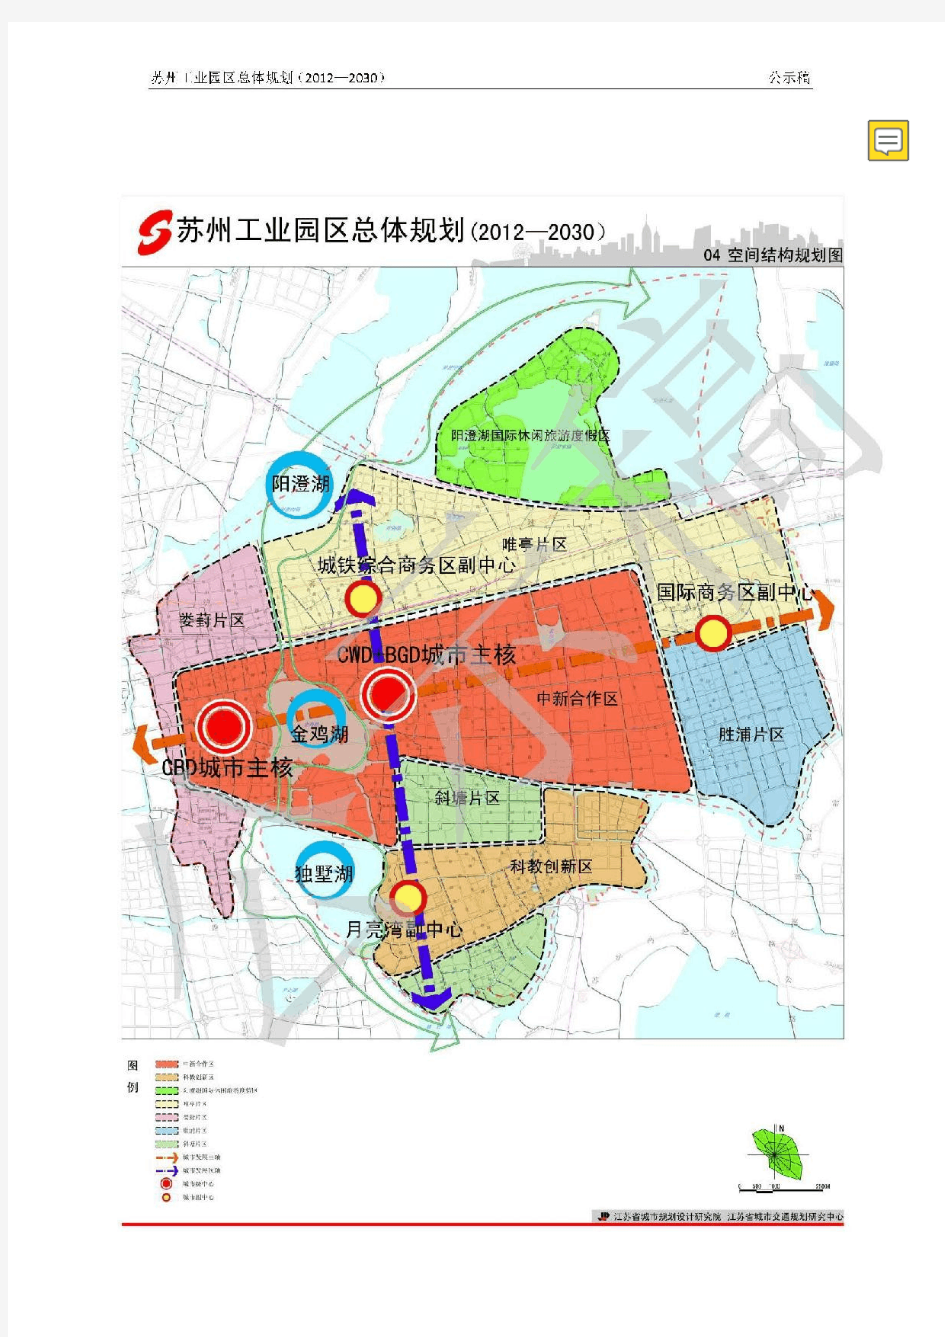 苏州工业园区总体规划(2012-2030)高清版